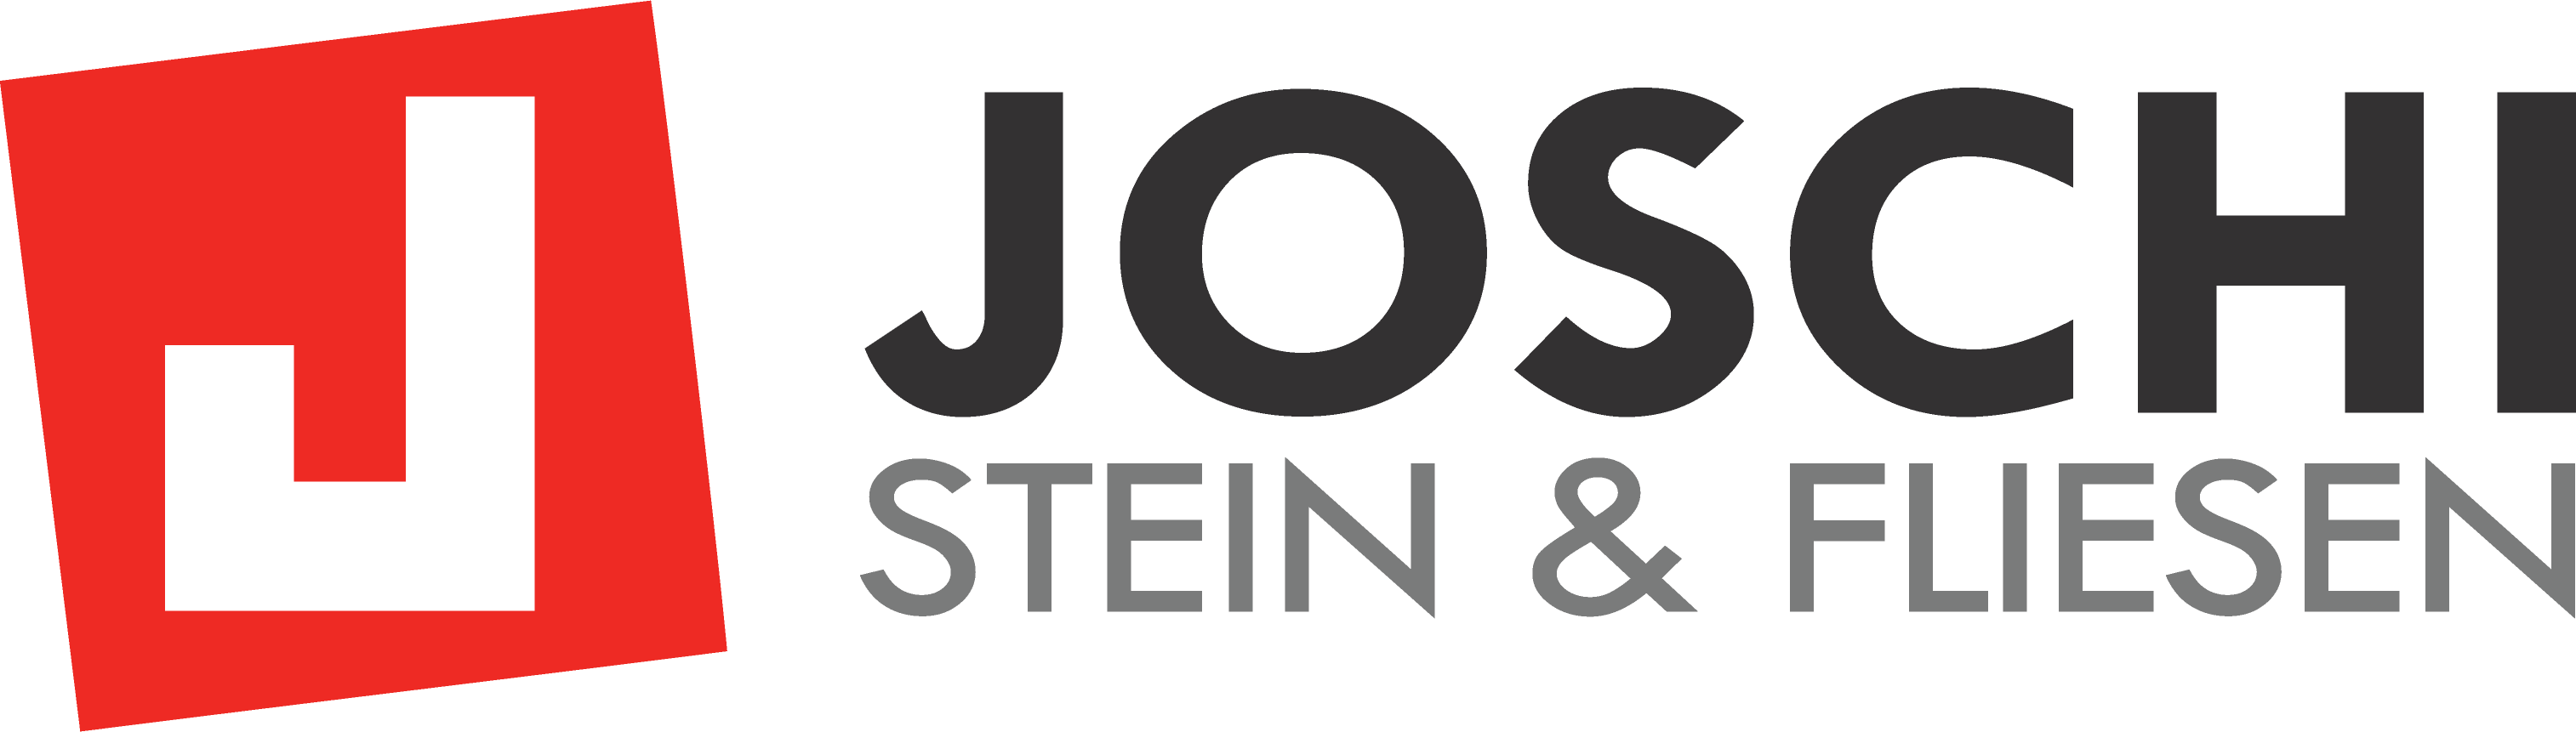 Joschi - Stein & Fliesen